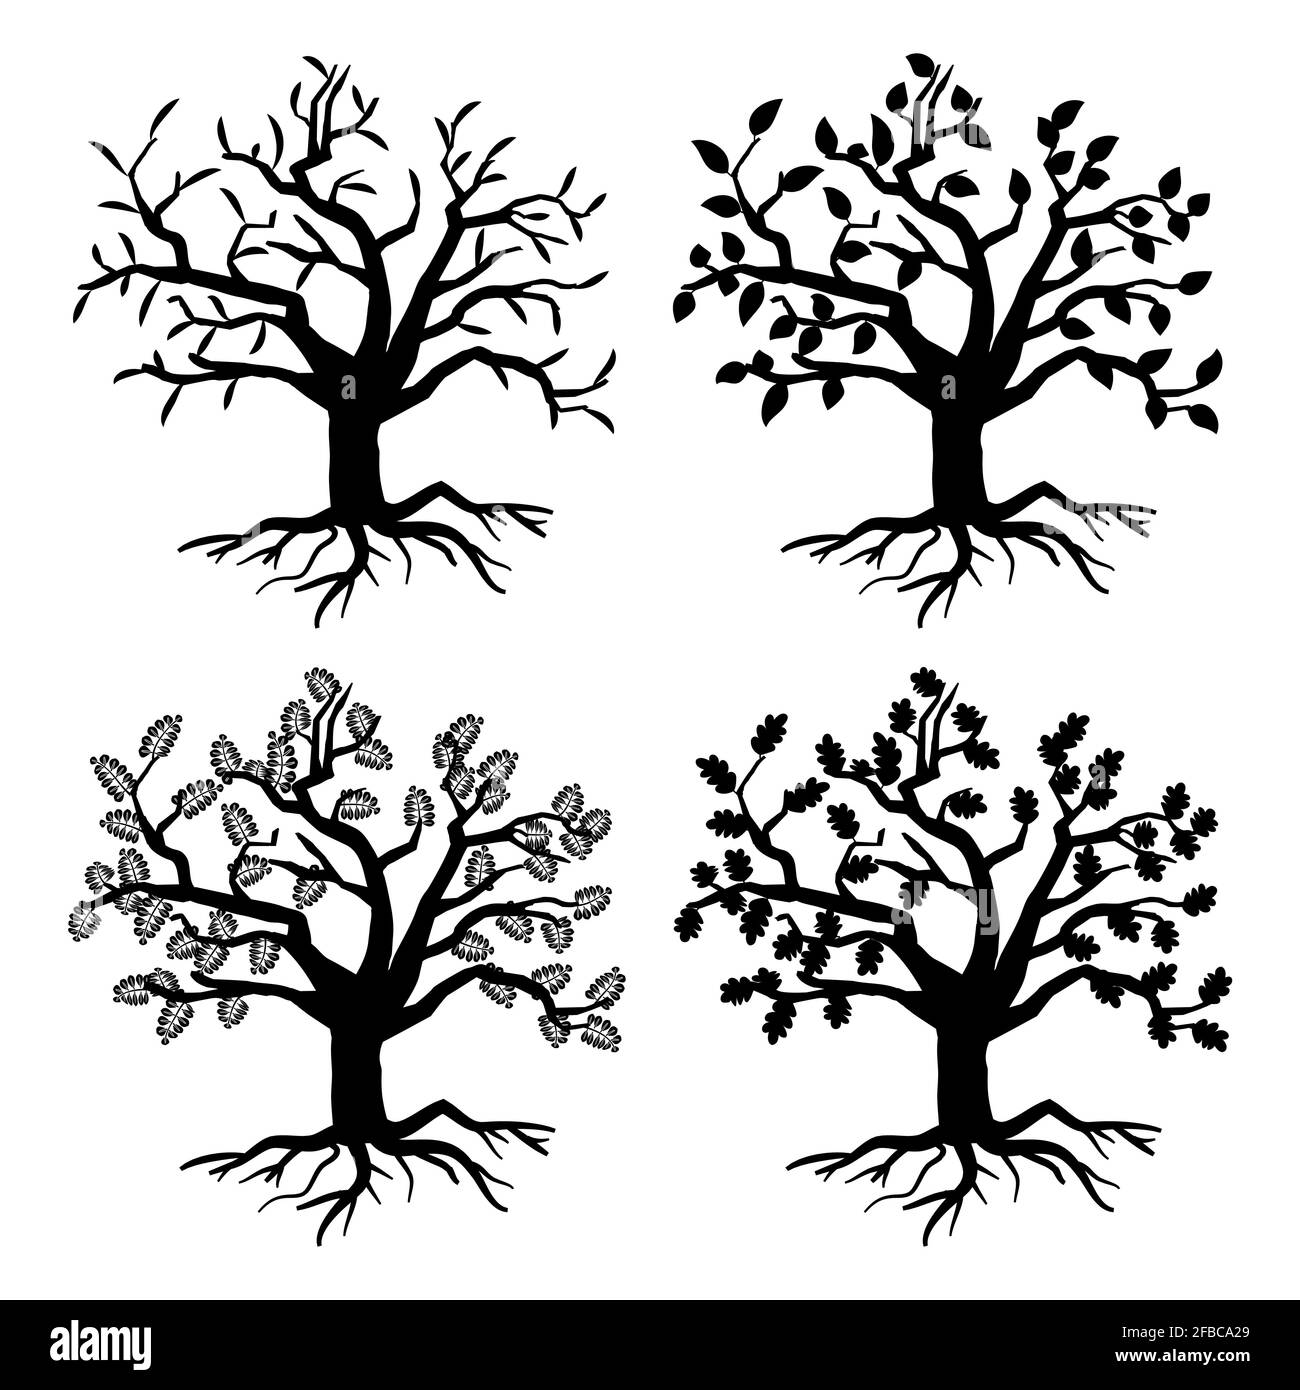 Garez de vieux arbres. Silhouettes d'arbres vectoriels avec racines et feuilles. Illustration monochrome de la flore des arbres de la collection Illustration de Vecteur